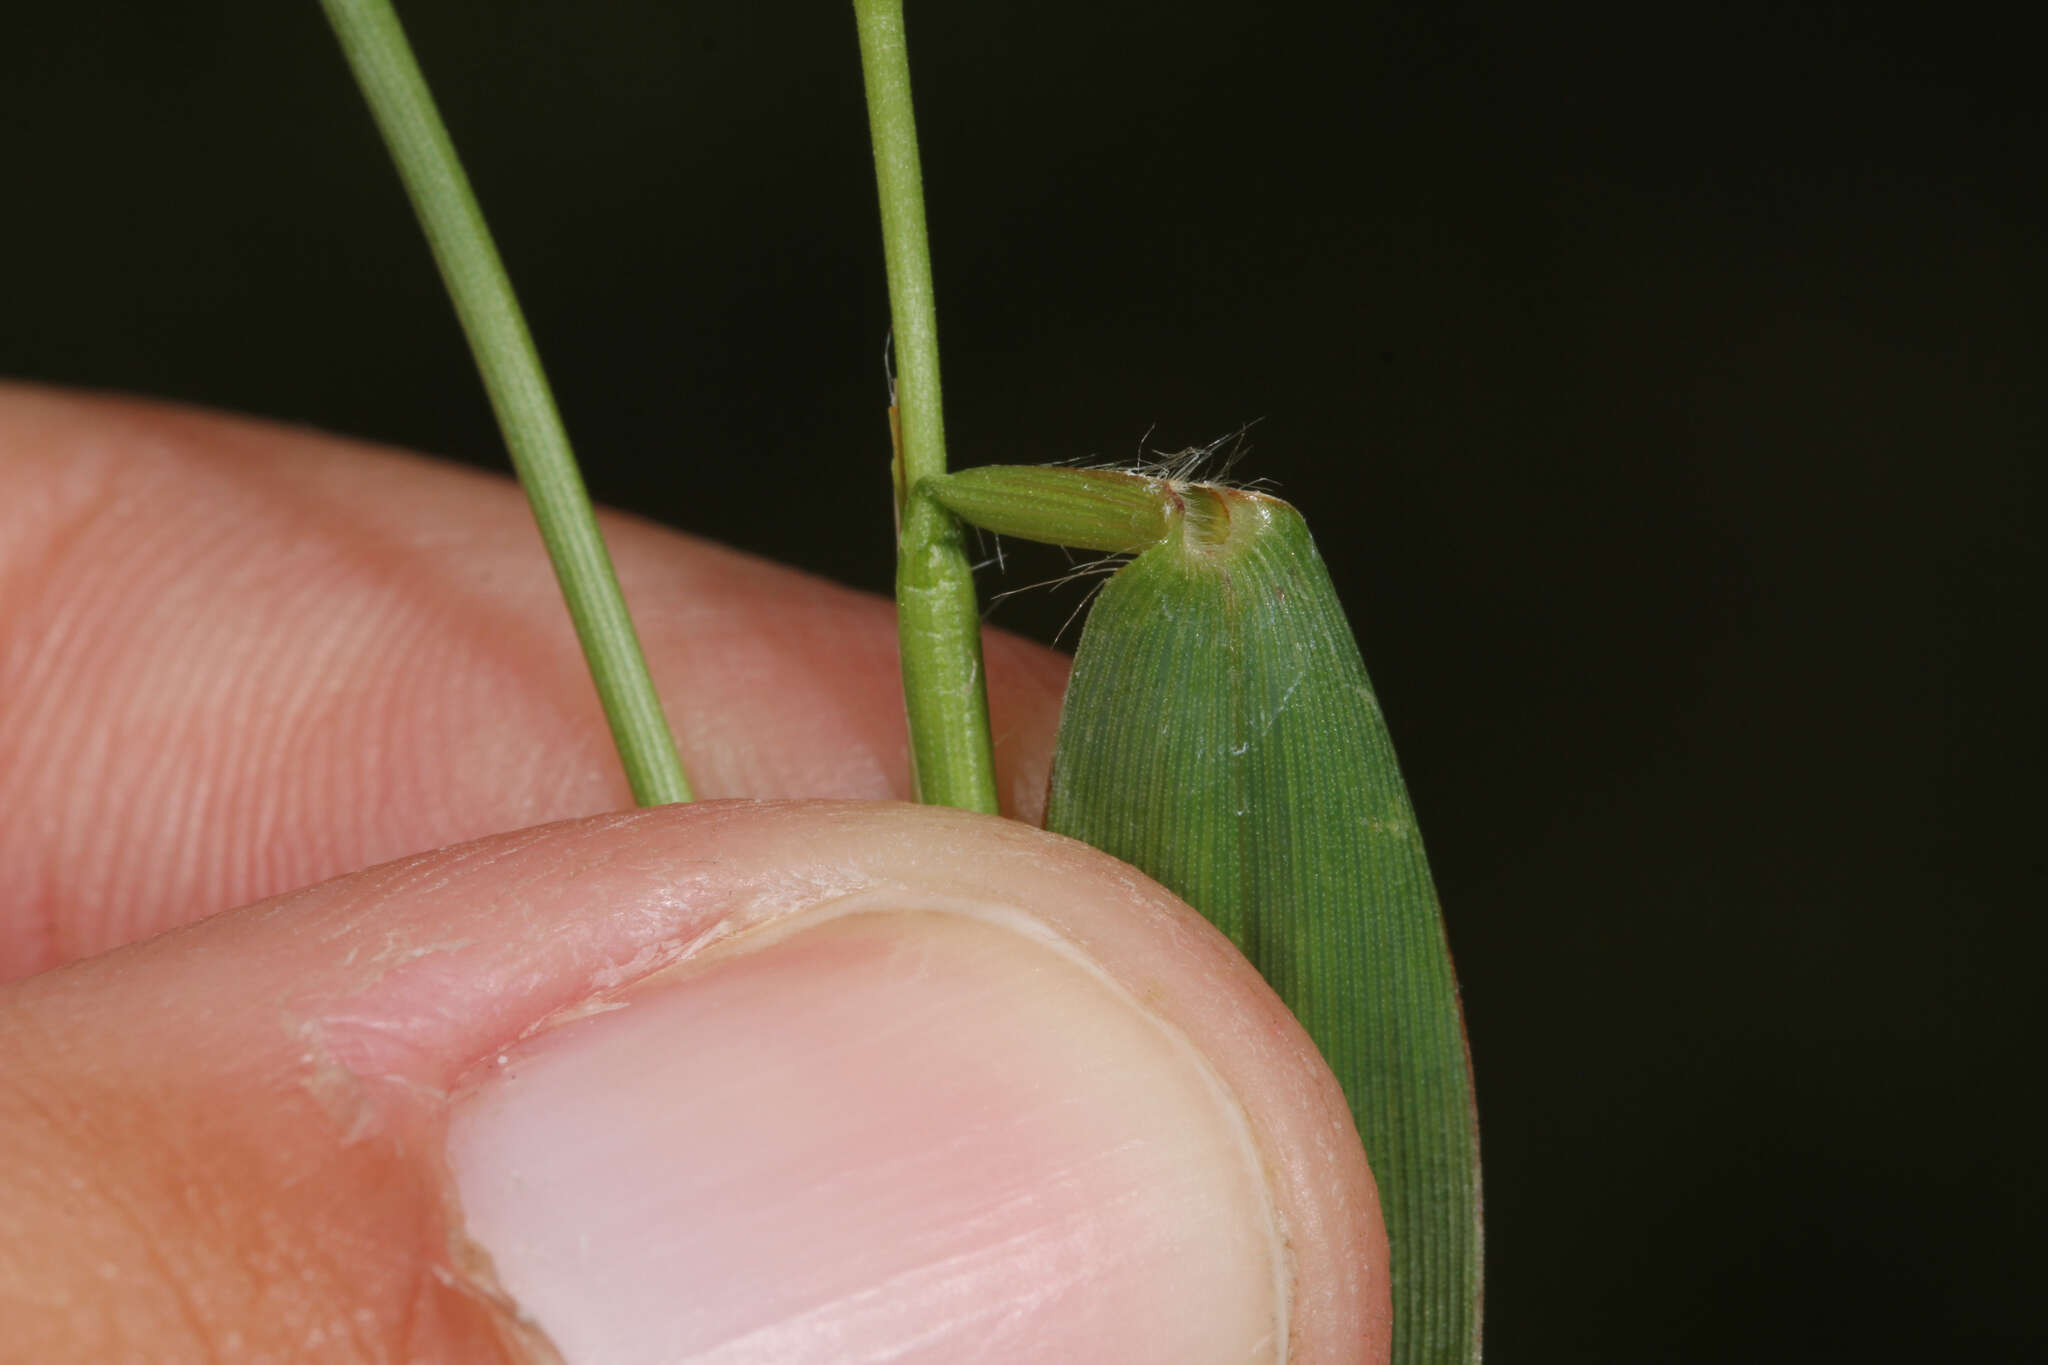 Image of slender rosette grass